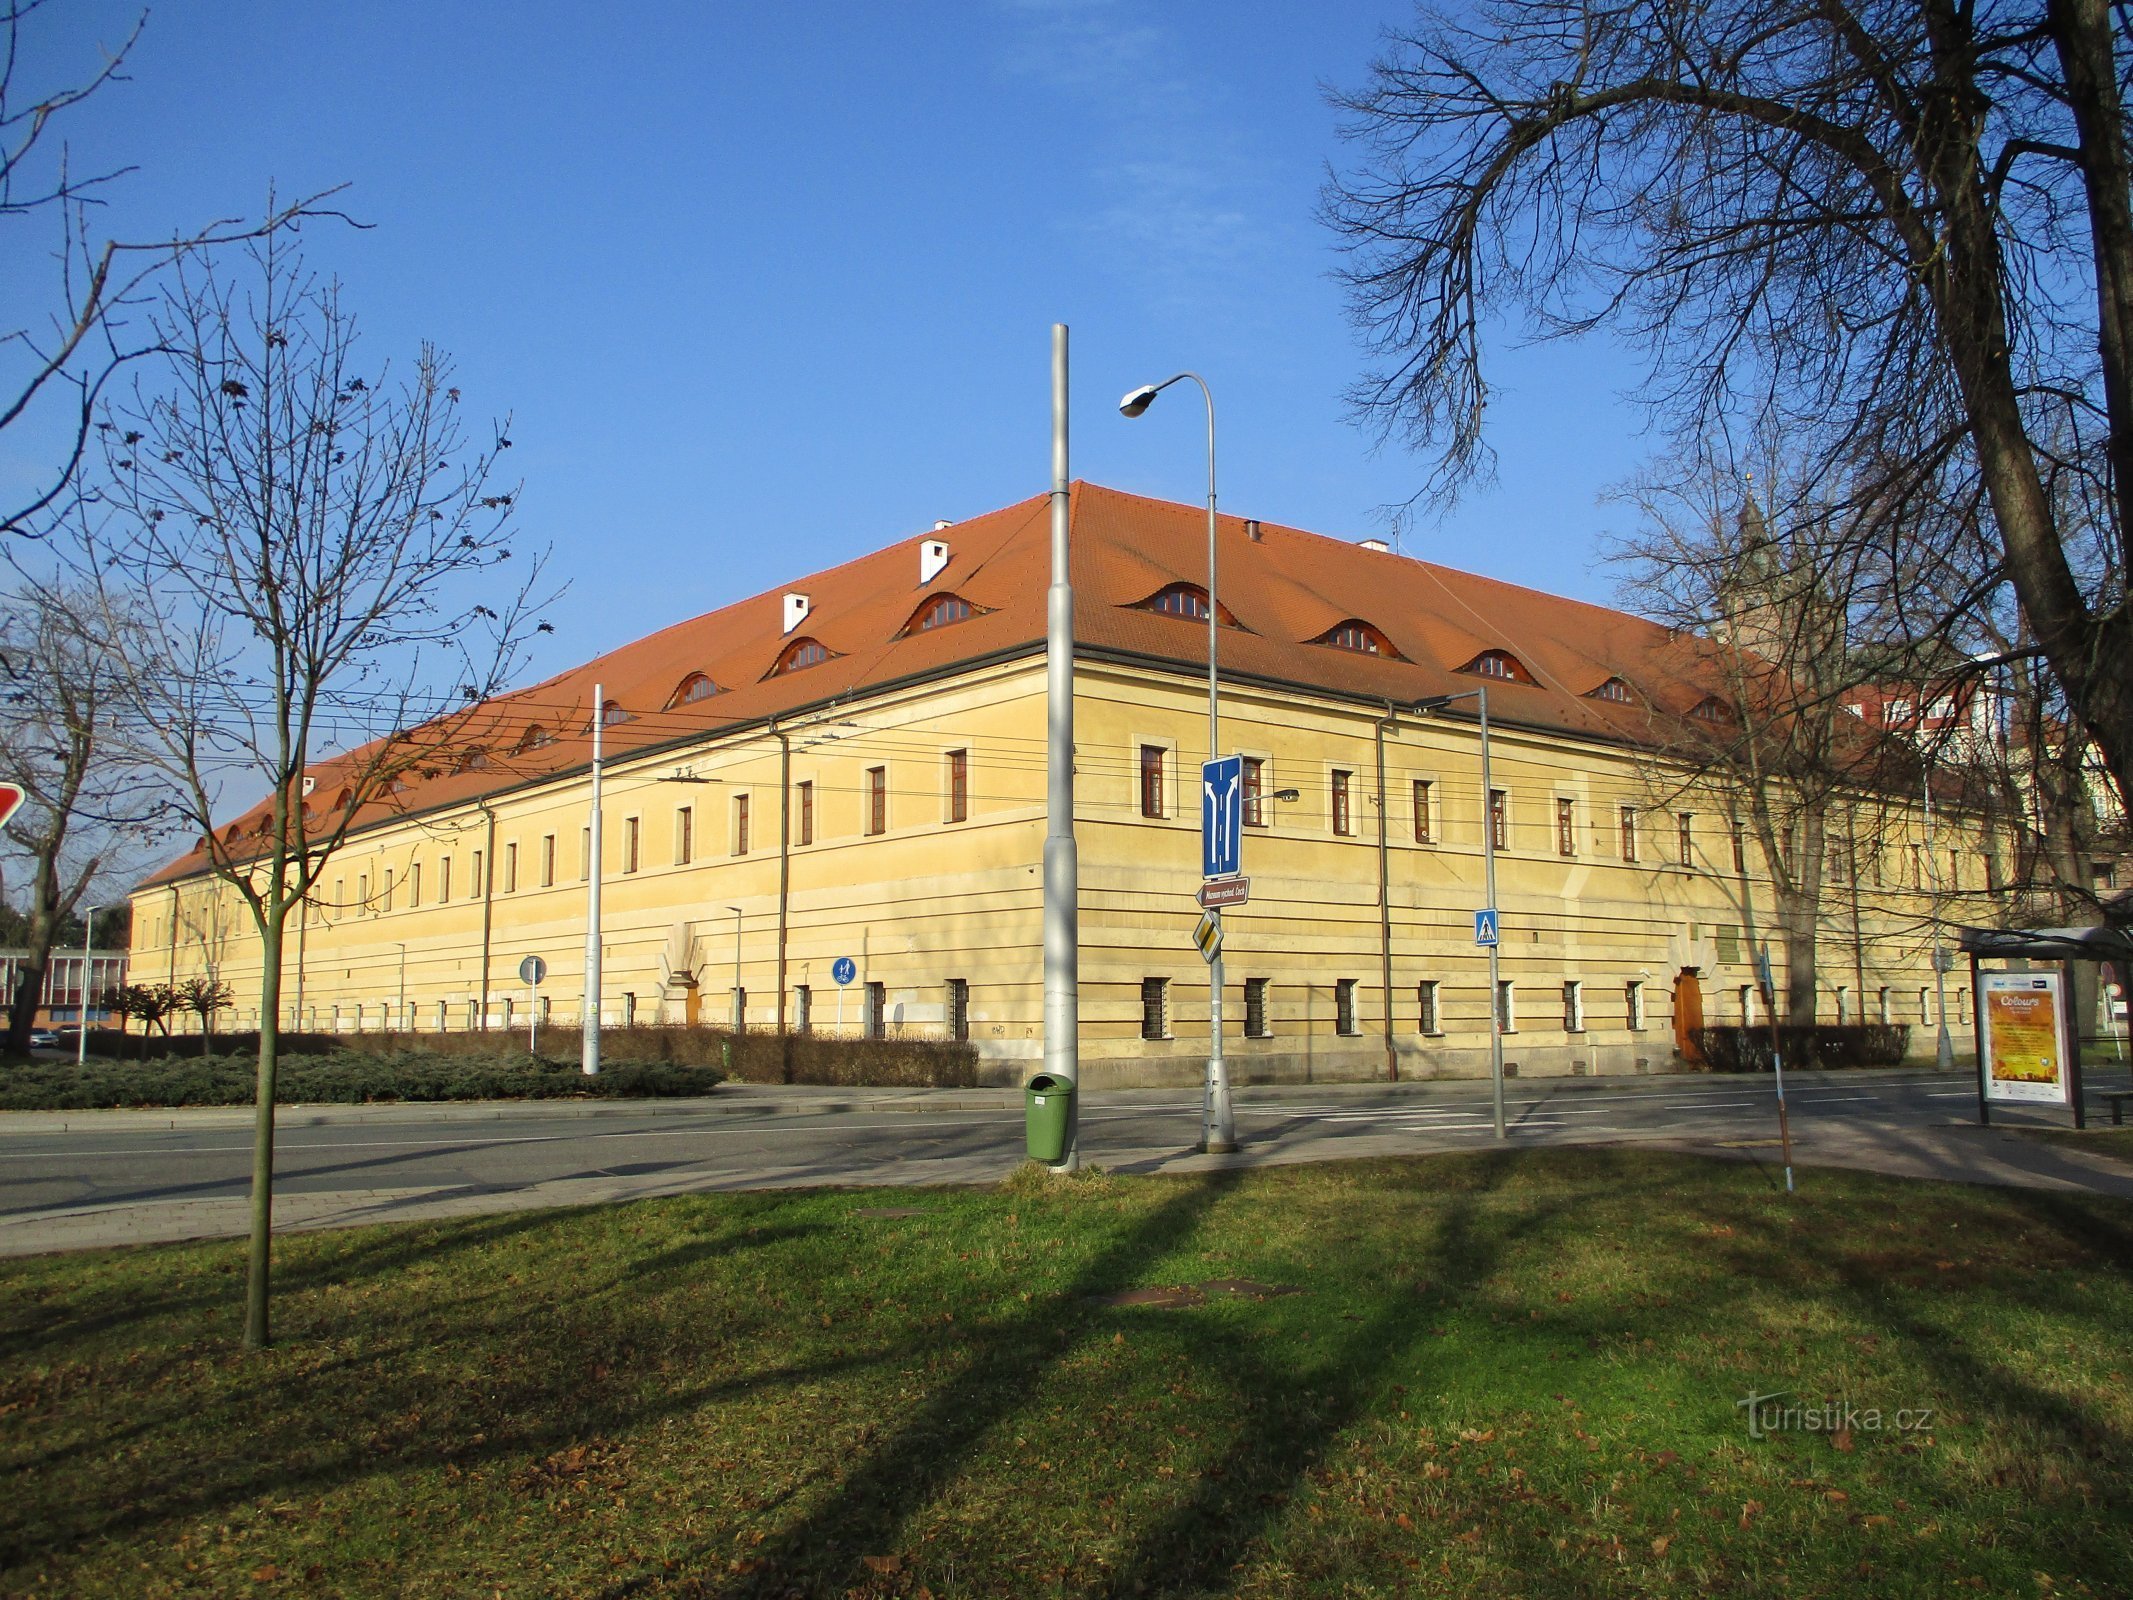 Doanh trại kỵ binh cũ (Hradec Králové, ngày 9.2.2020 tháng XNUMX năm XNUMX)